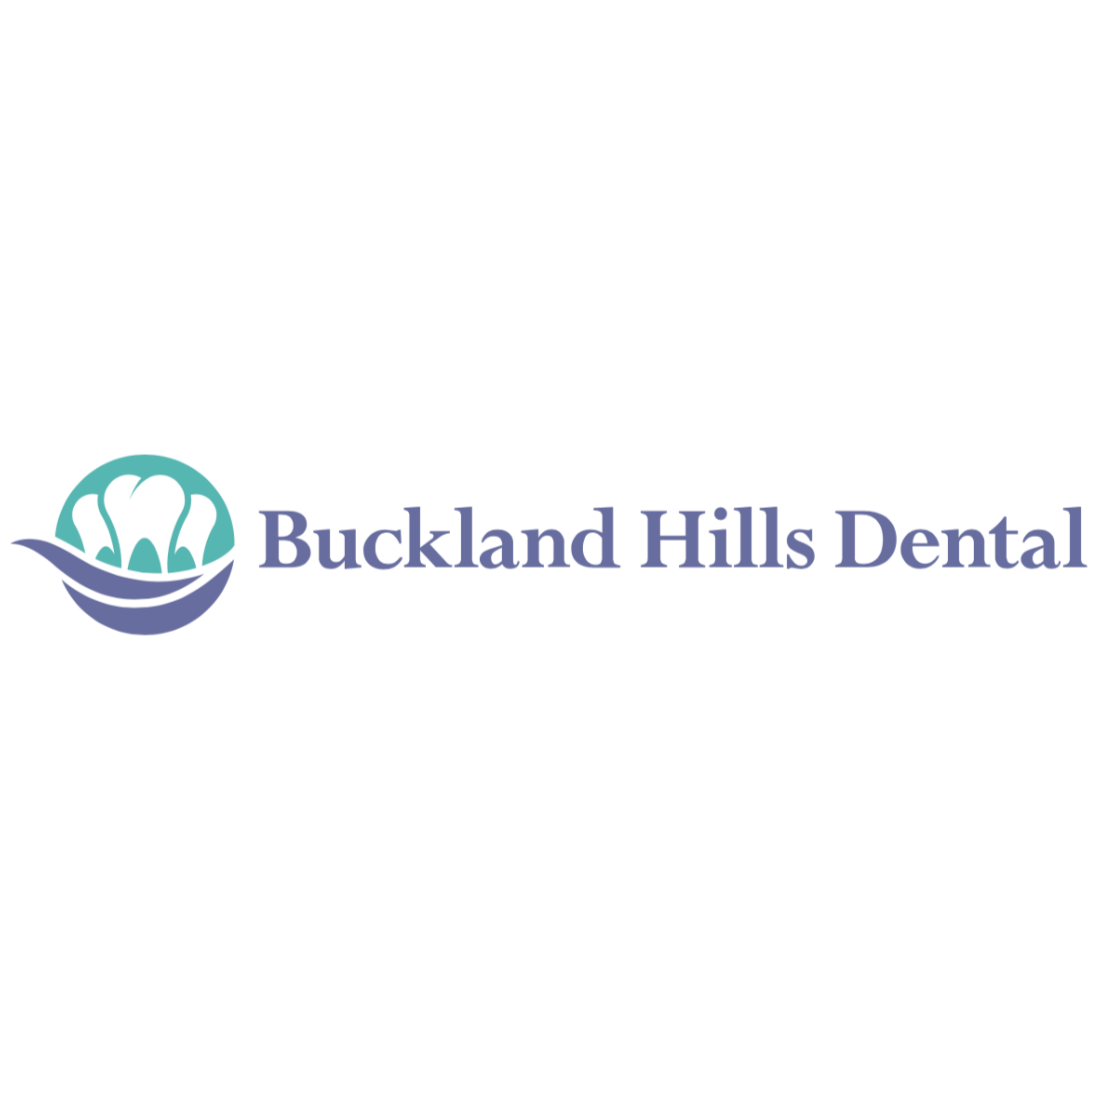 Buckland Hills Dental